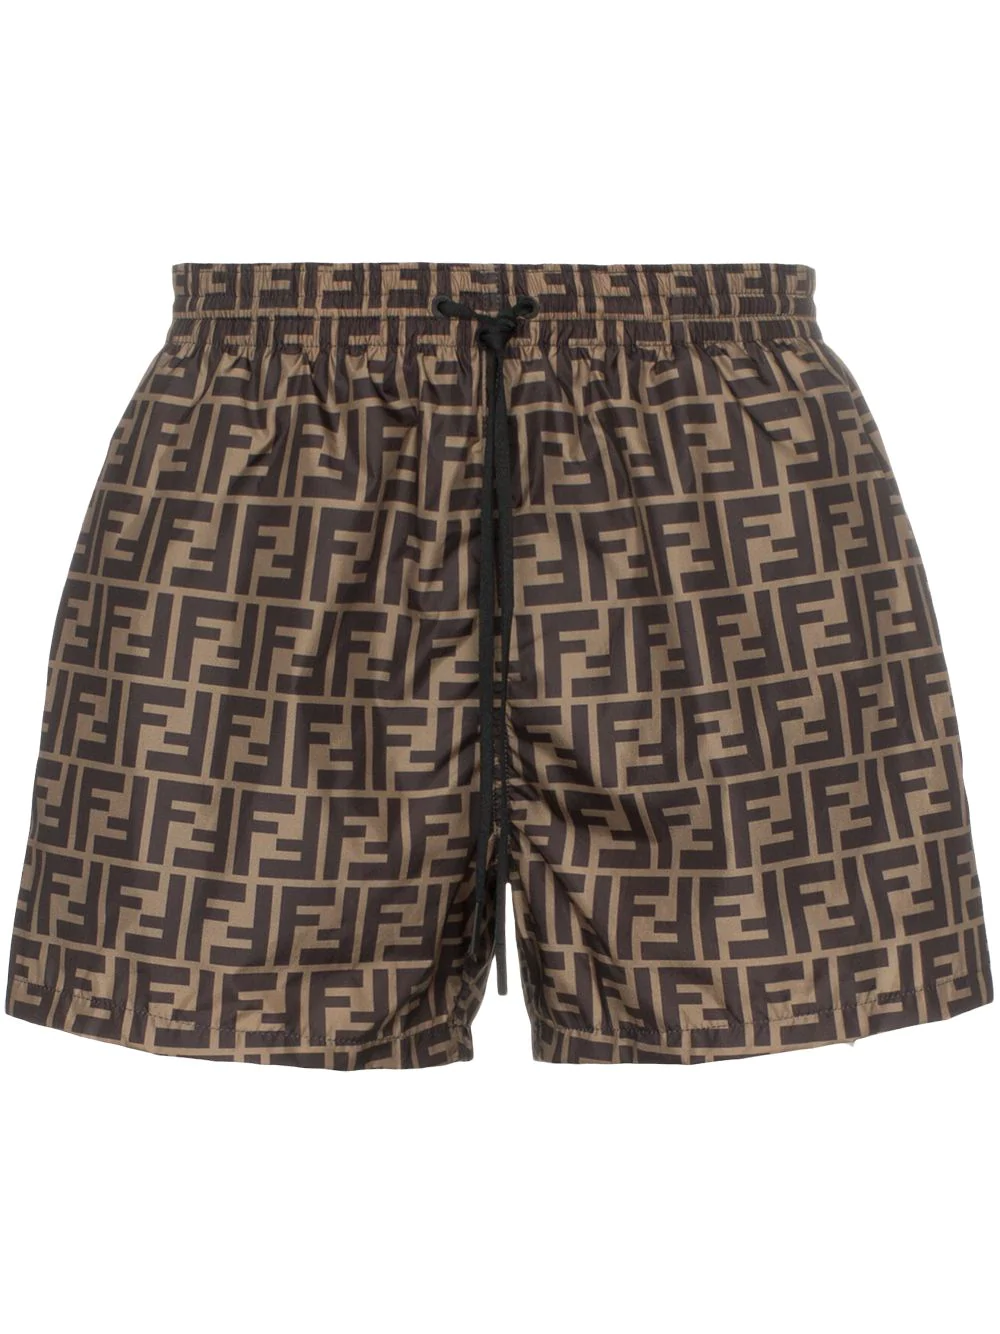 Fendi Ff Logo Print Swim Shorts - Brown | ModeSens